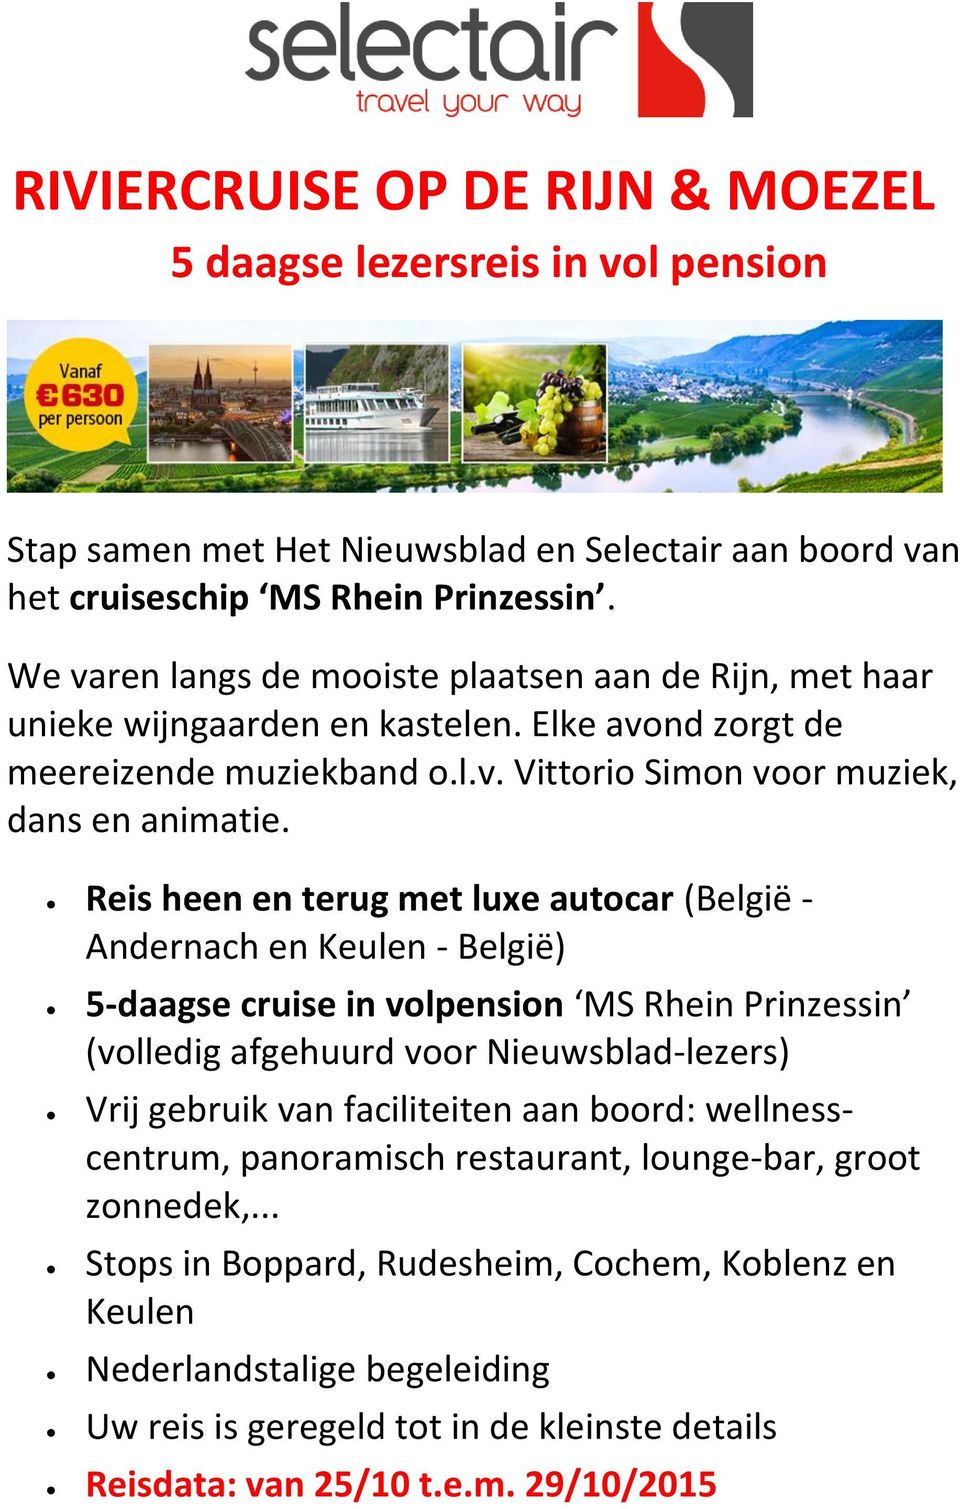 Reis heen en terug met luxe autocar (België - Andernach en Keulen - België) 5-daagse cruise in volpension MS Rhein Prinzessin (volledig afgehuurd voor Nieuwsblad-lezers) Vrij gebruik van faciliteiten